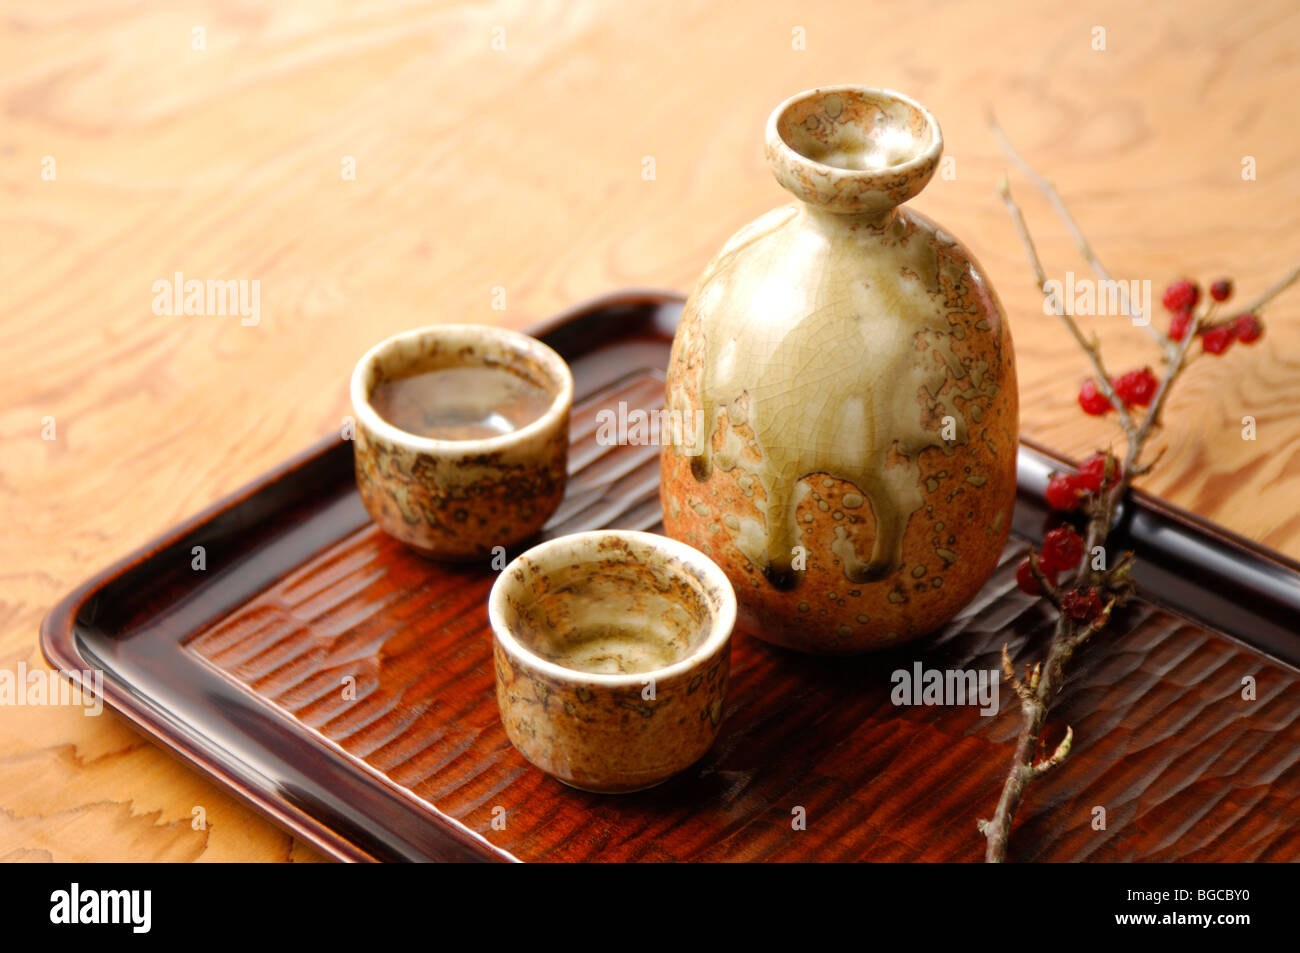 Sake bottle and sake cup Stock Photo